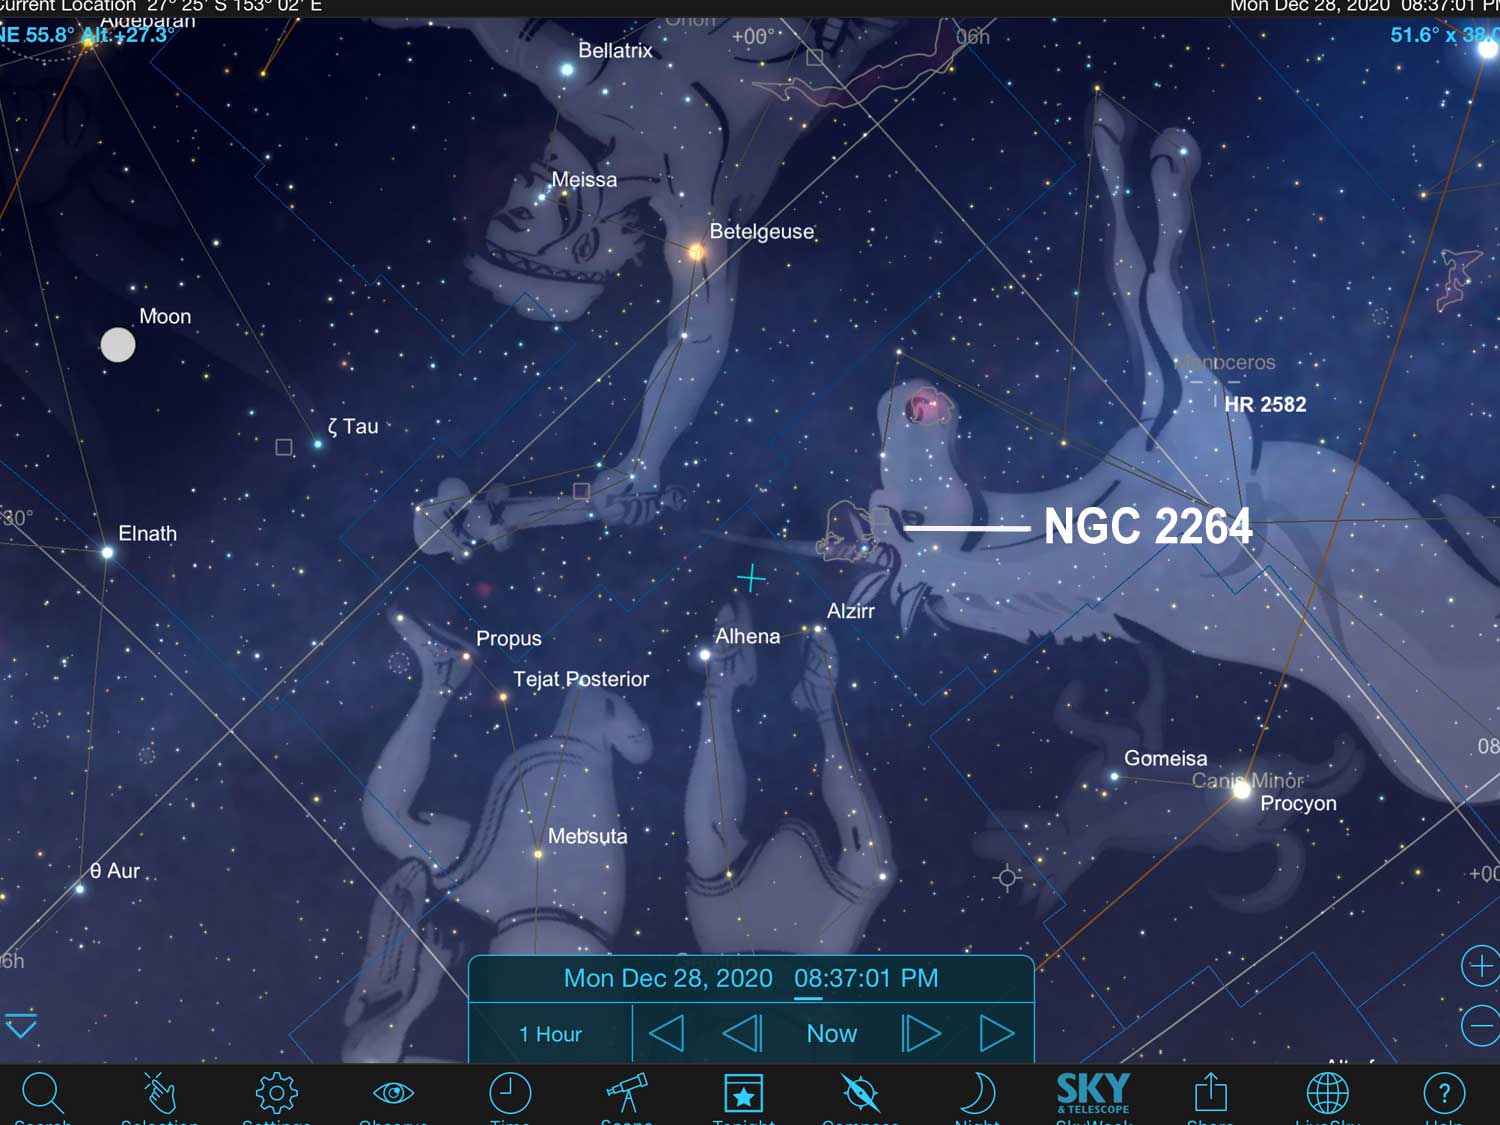 Using SkySafari Pro to locate NGC 2264